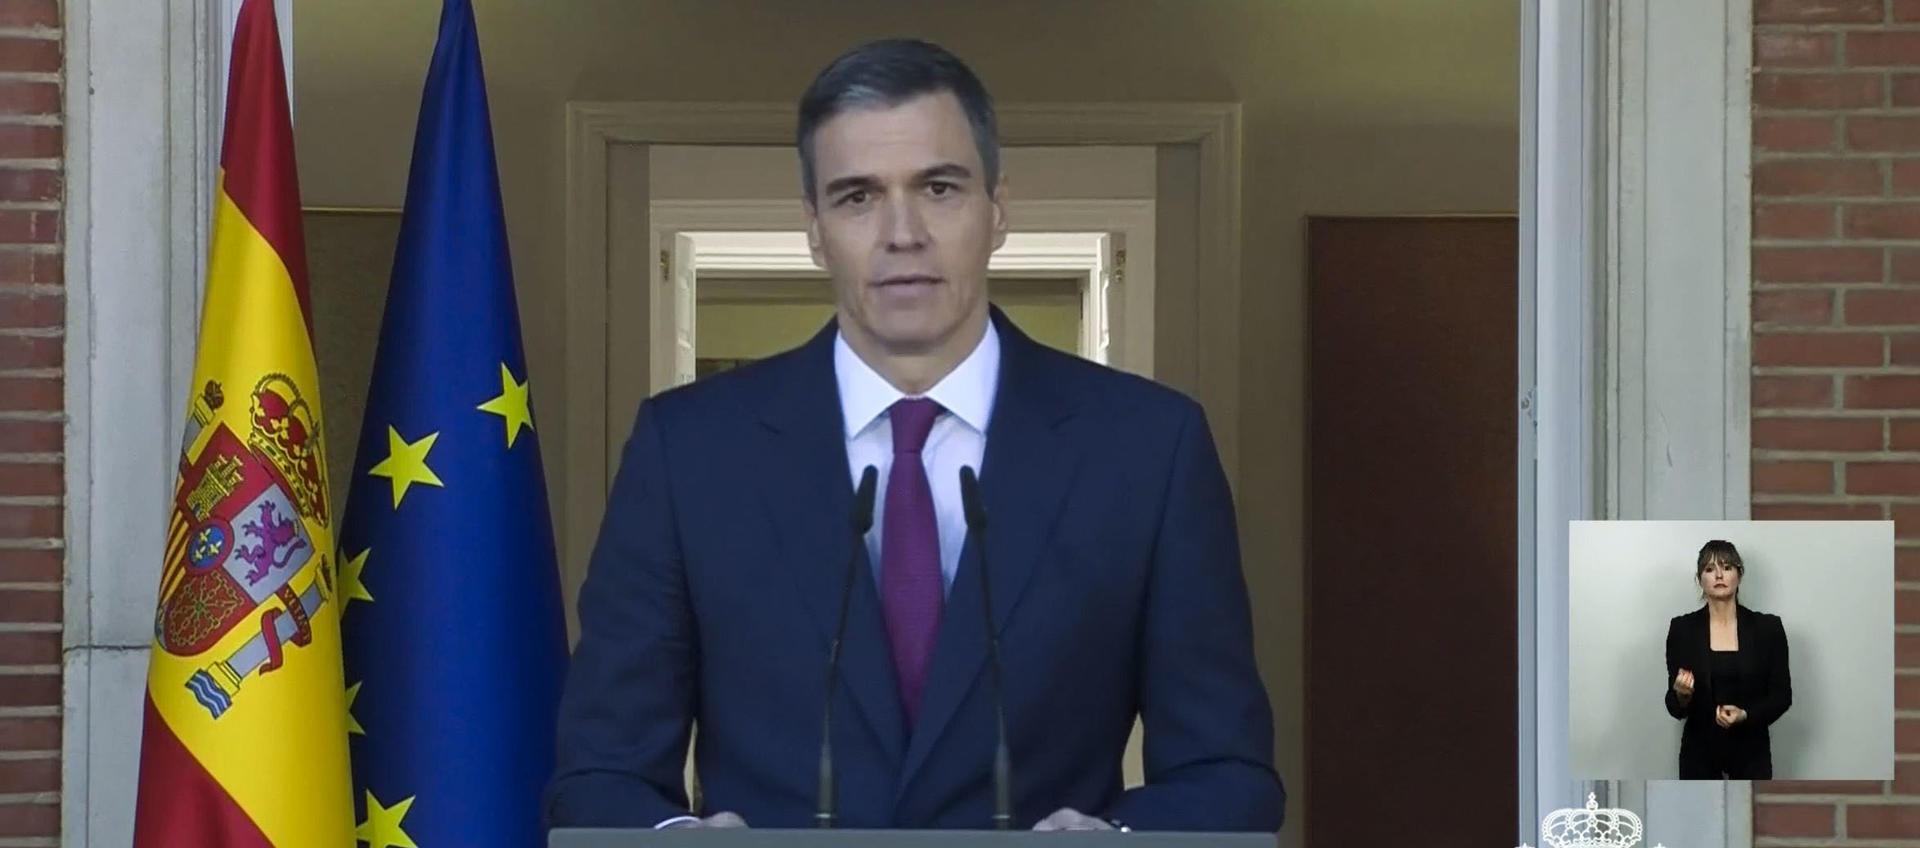 Pedro Sánchez, presidente del Gobierno Español.